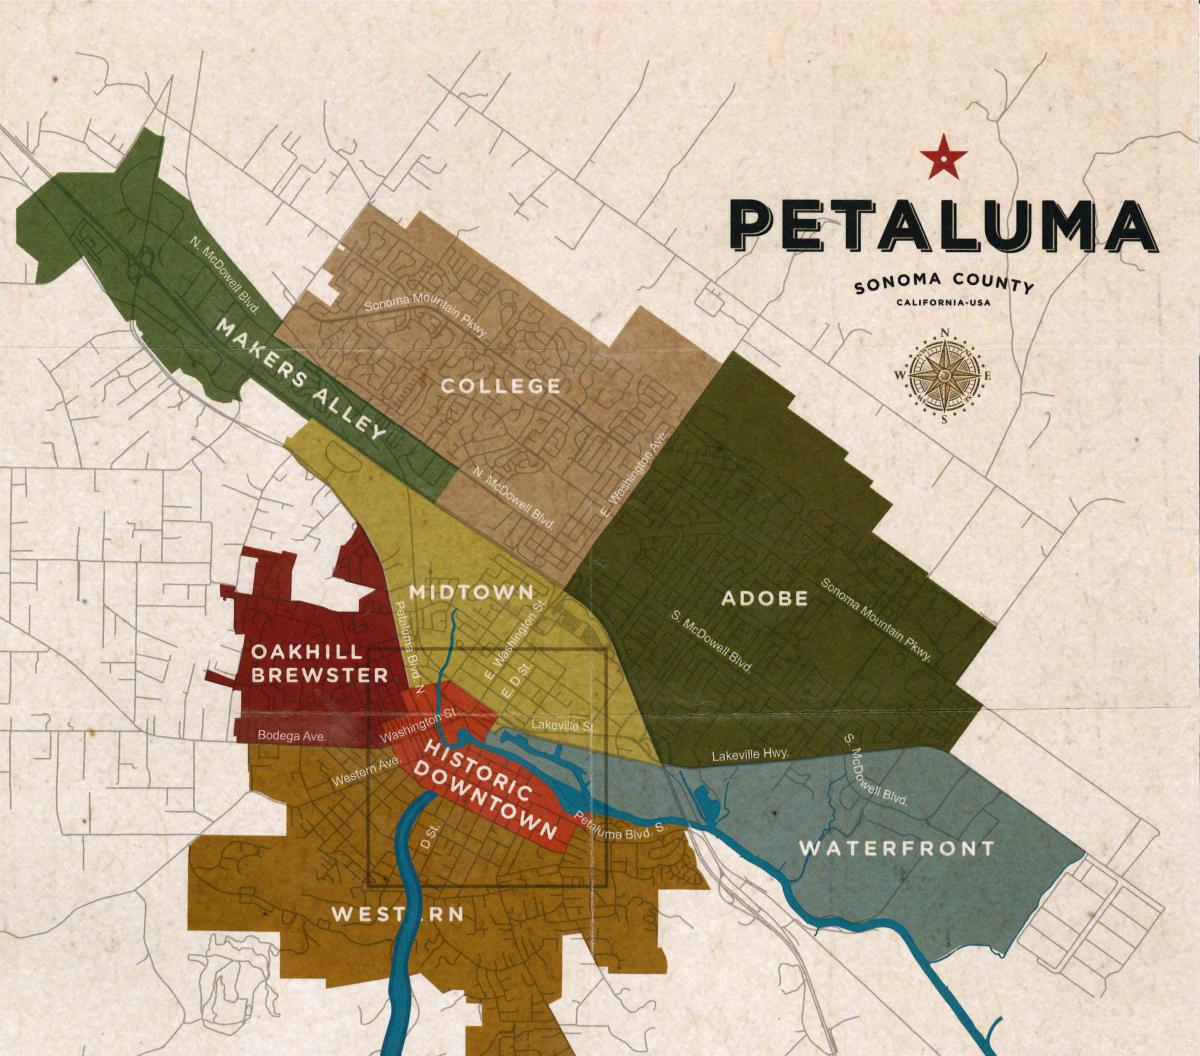 Map of Petaluma districting